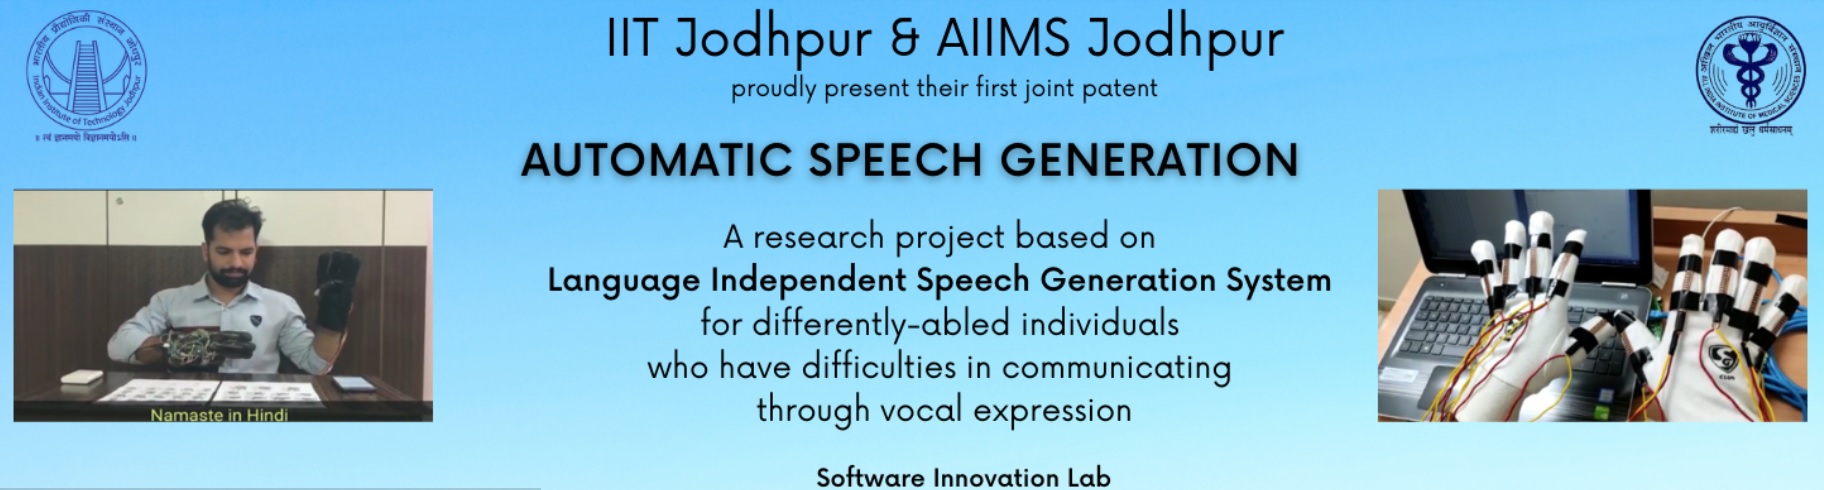 IIT Jodhpur and AIIMS Jodhpur